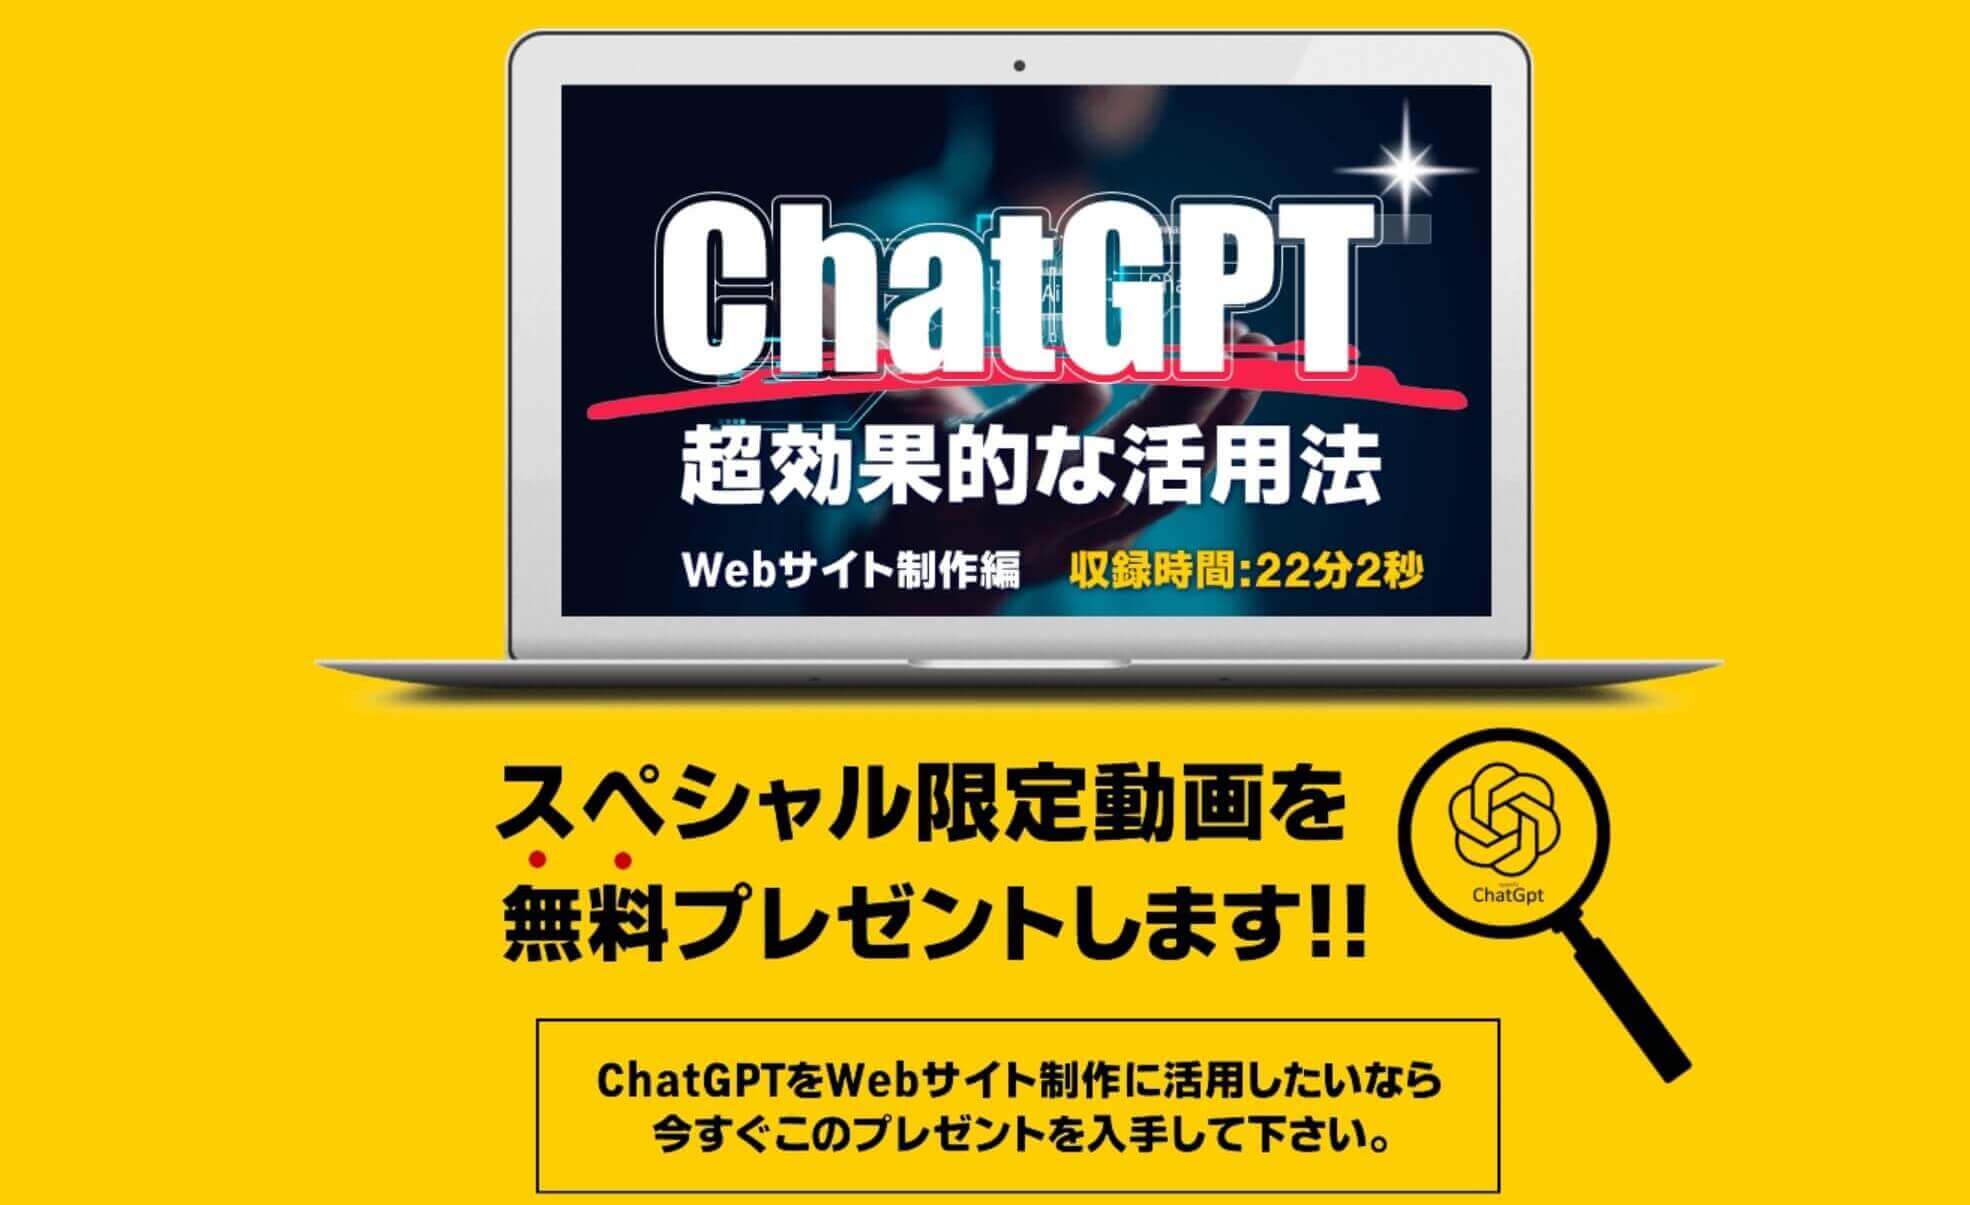 ChatGPTの活用方法の動画をプレゼント